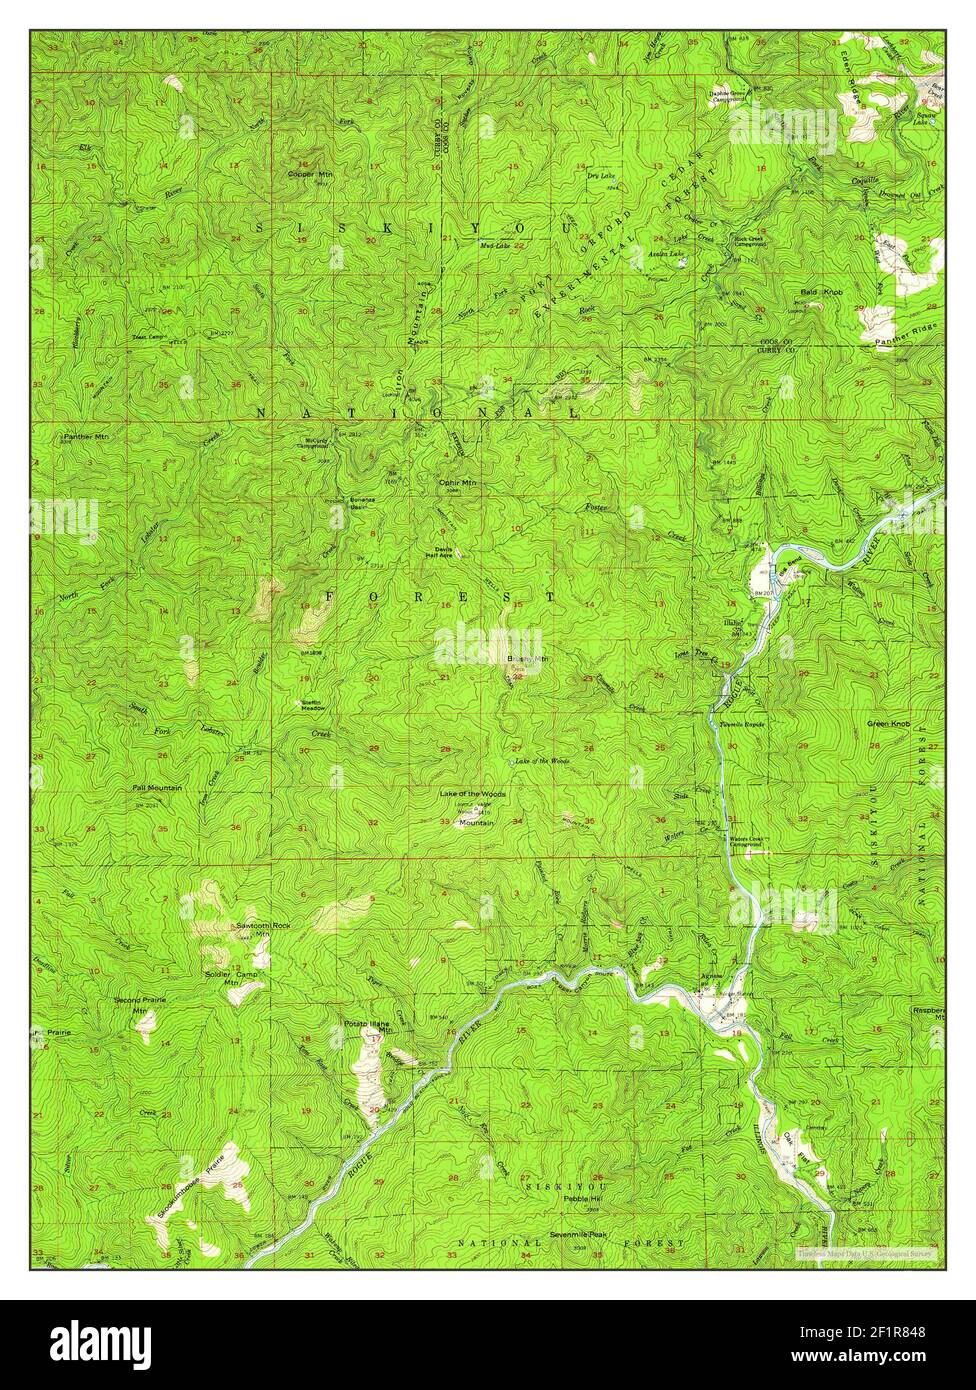 Agness Oregon Map 1954 1 62500 Estados Unidos De America Por Timeless Maps Data U S Geological Survey 2f1r848 